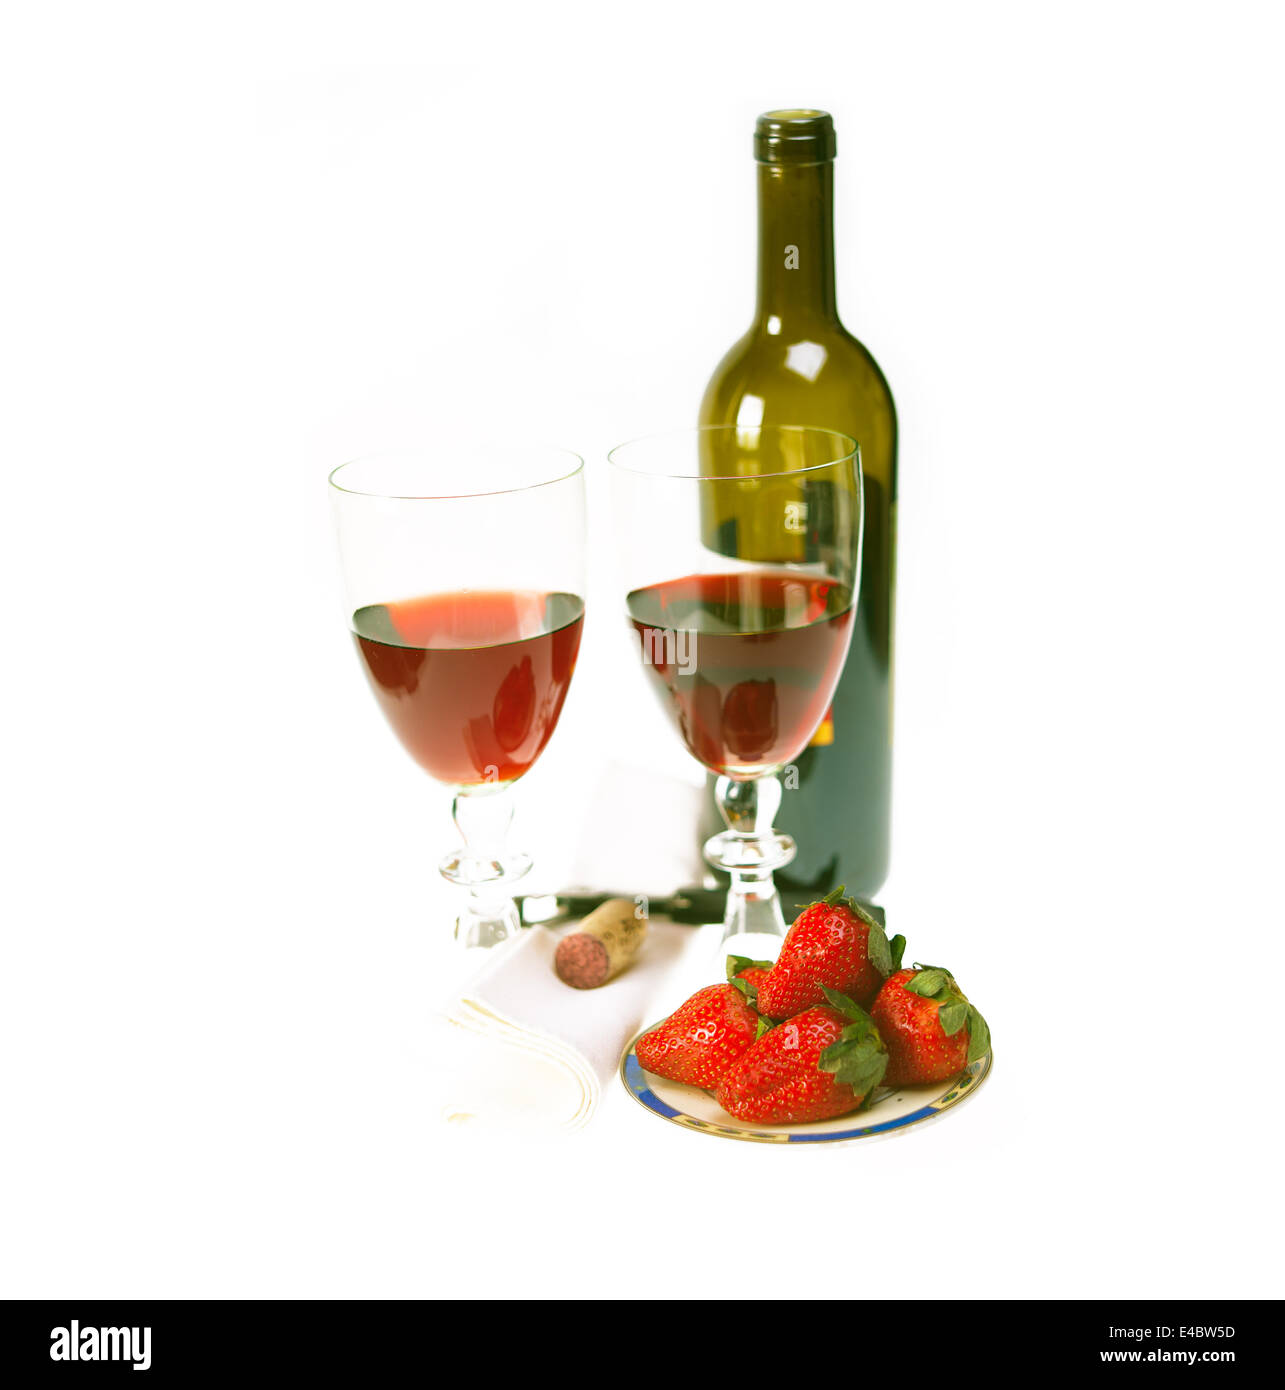 Botella de vino tinto y dos copas con fresas Foto de stock